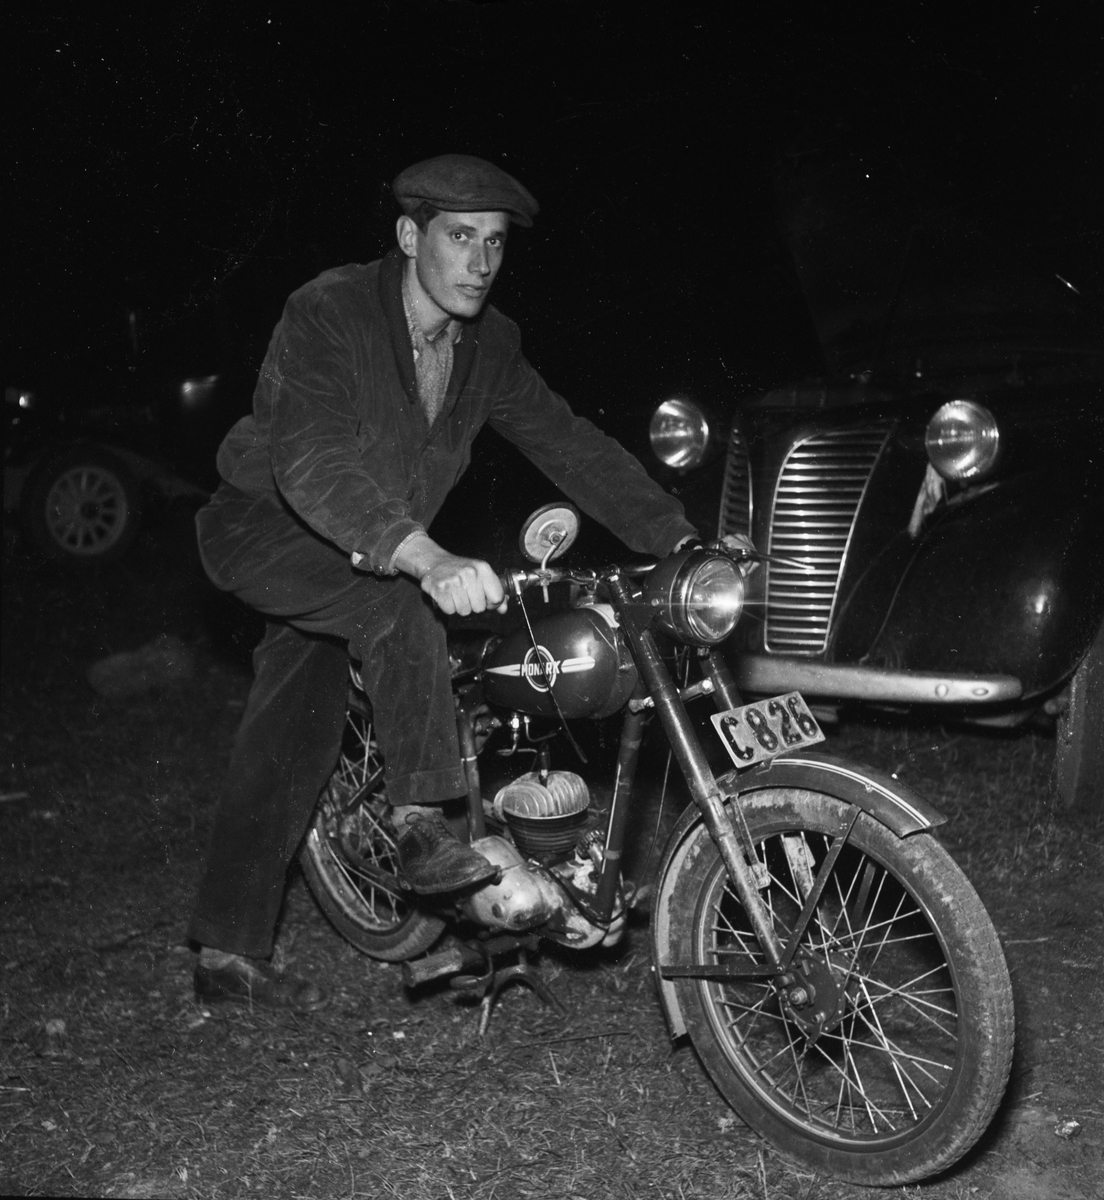 Pelle Eriksson, "en av de få som har kvar motorcykeln" vid Grindstugan, Kåbo